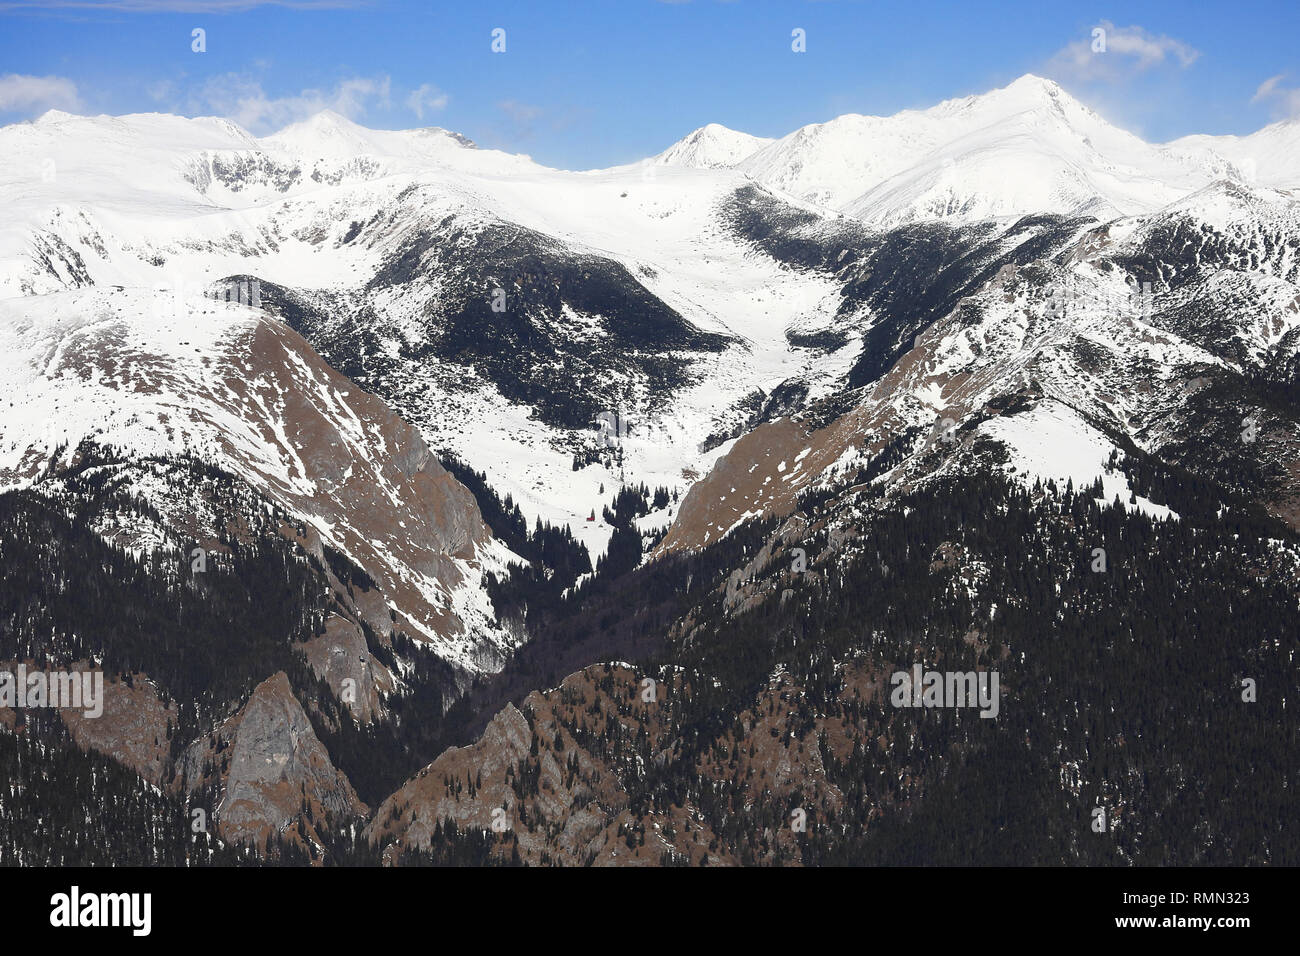 Eine schöne Aussicht auf der großen Höhe Gipfel im Schnee und eine schöne Tal bedeckt in der Mitte beginnend zwischen zwei felsigen Bergrücken mit kein Schnee links und contin Stockfoto